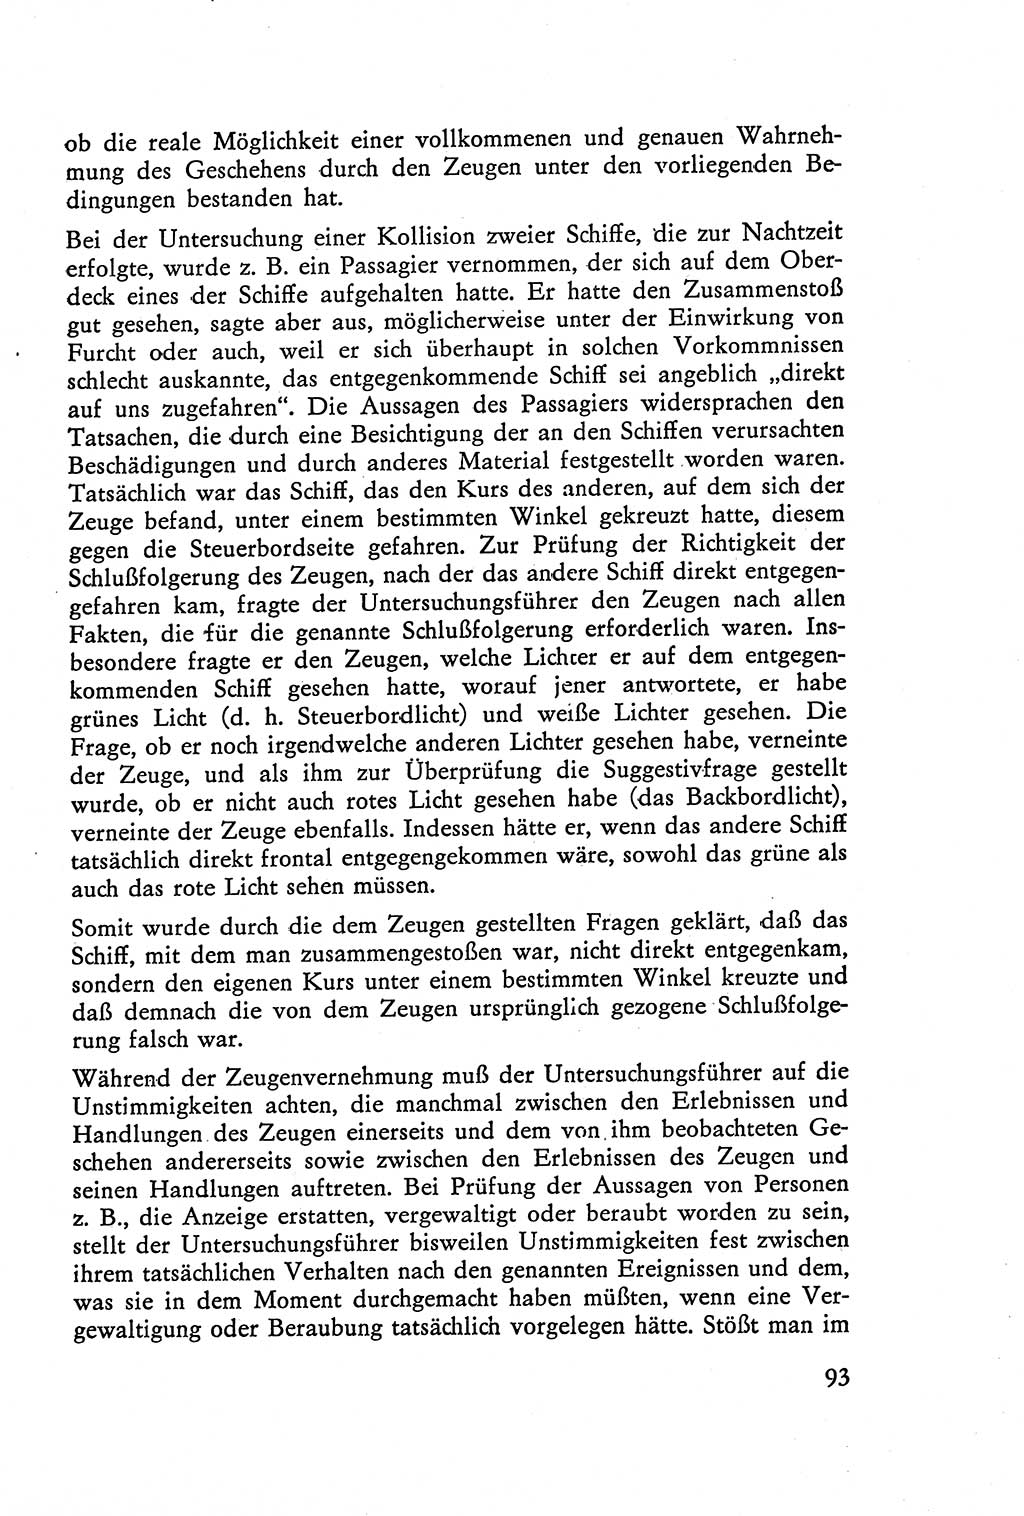 Die Vernehmung [Deutsche Demokratische Republik (DDR)] 1960, Seite 93 (Vern. DDR 1960, S. 93)